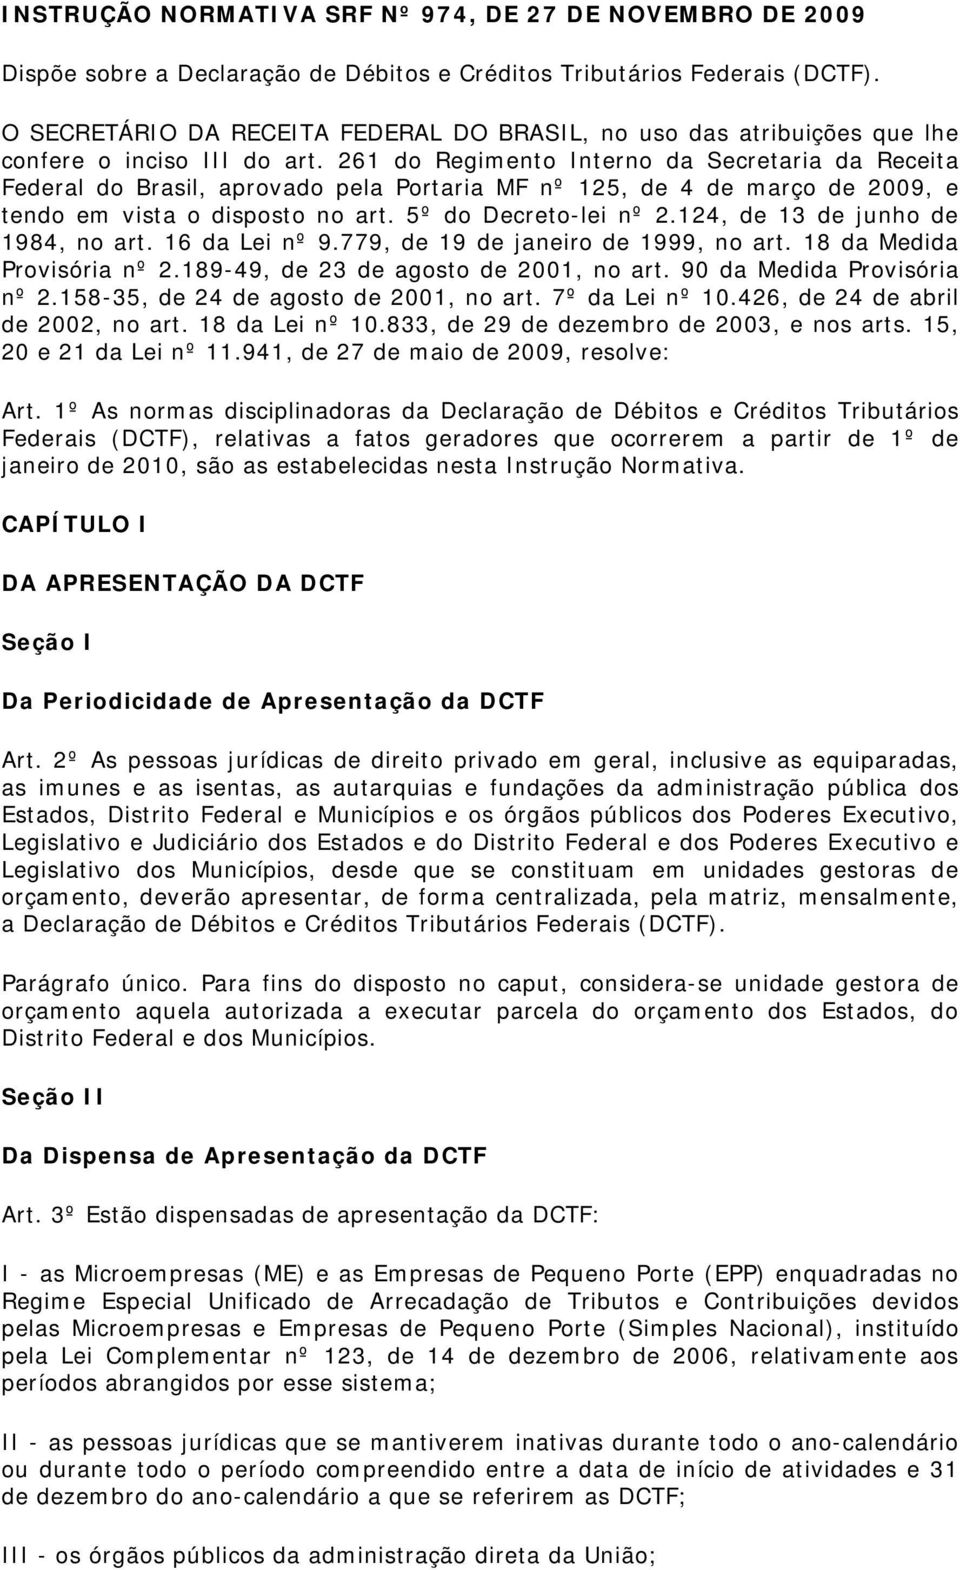 261 do Regimento Interno da Secretaria da Receita Federal do Brasil, aprovado pela Portaria MF nº 125, de 4 de março de 2009, e tendo em vista o disposto no art. 5º do Decreto-lei nº 2.